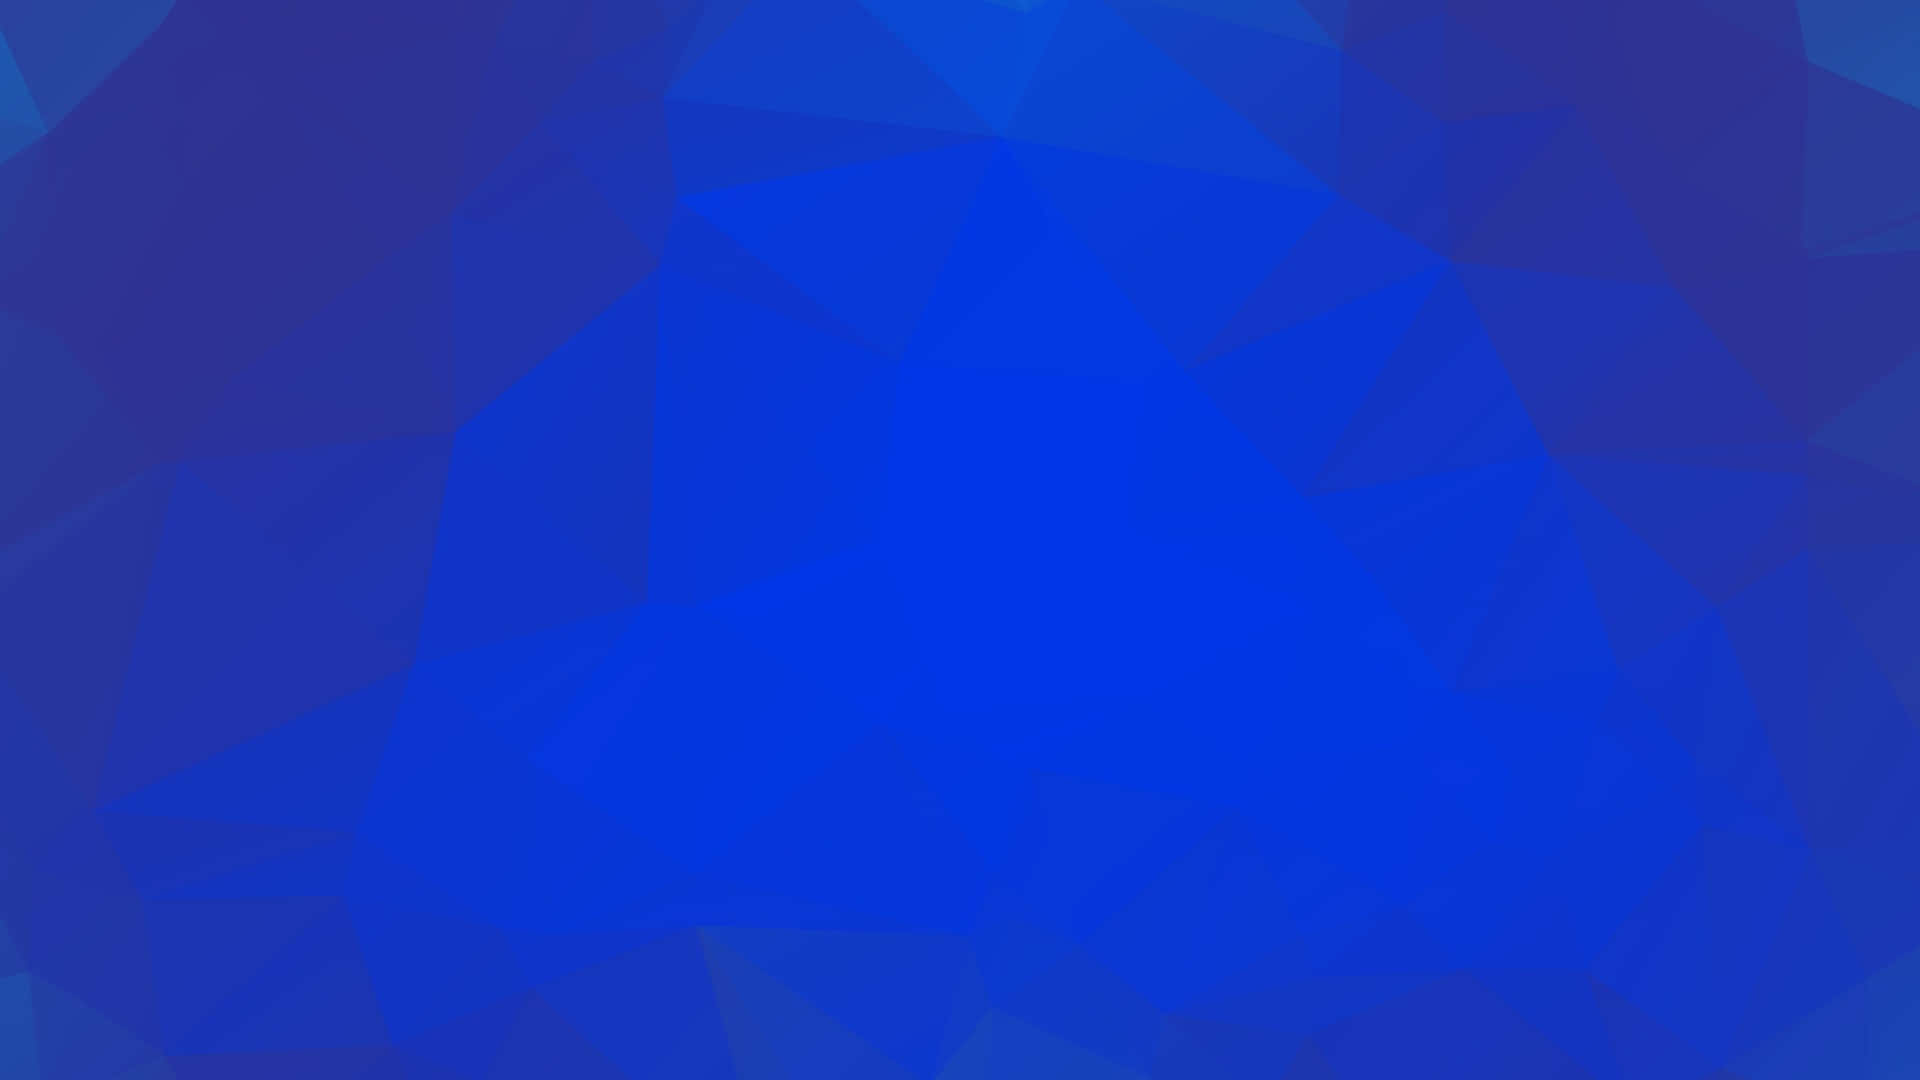 Geometric Blue Shapes in a Pattern Wallpaper